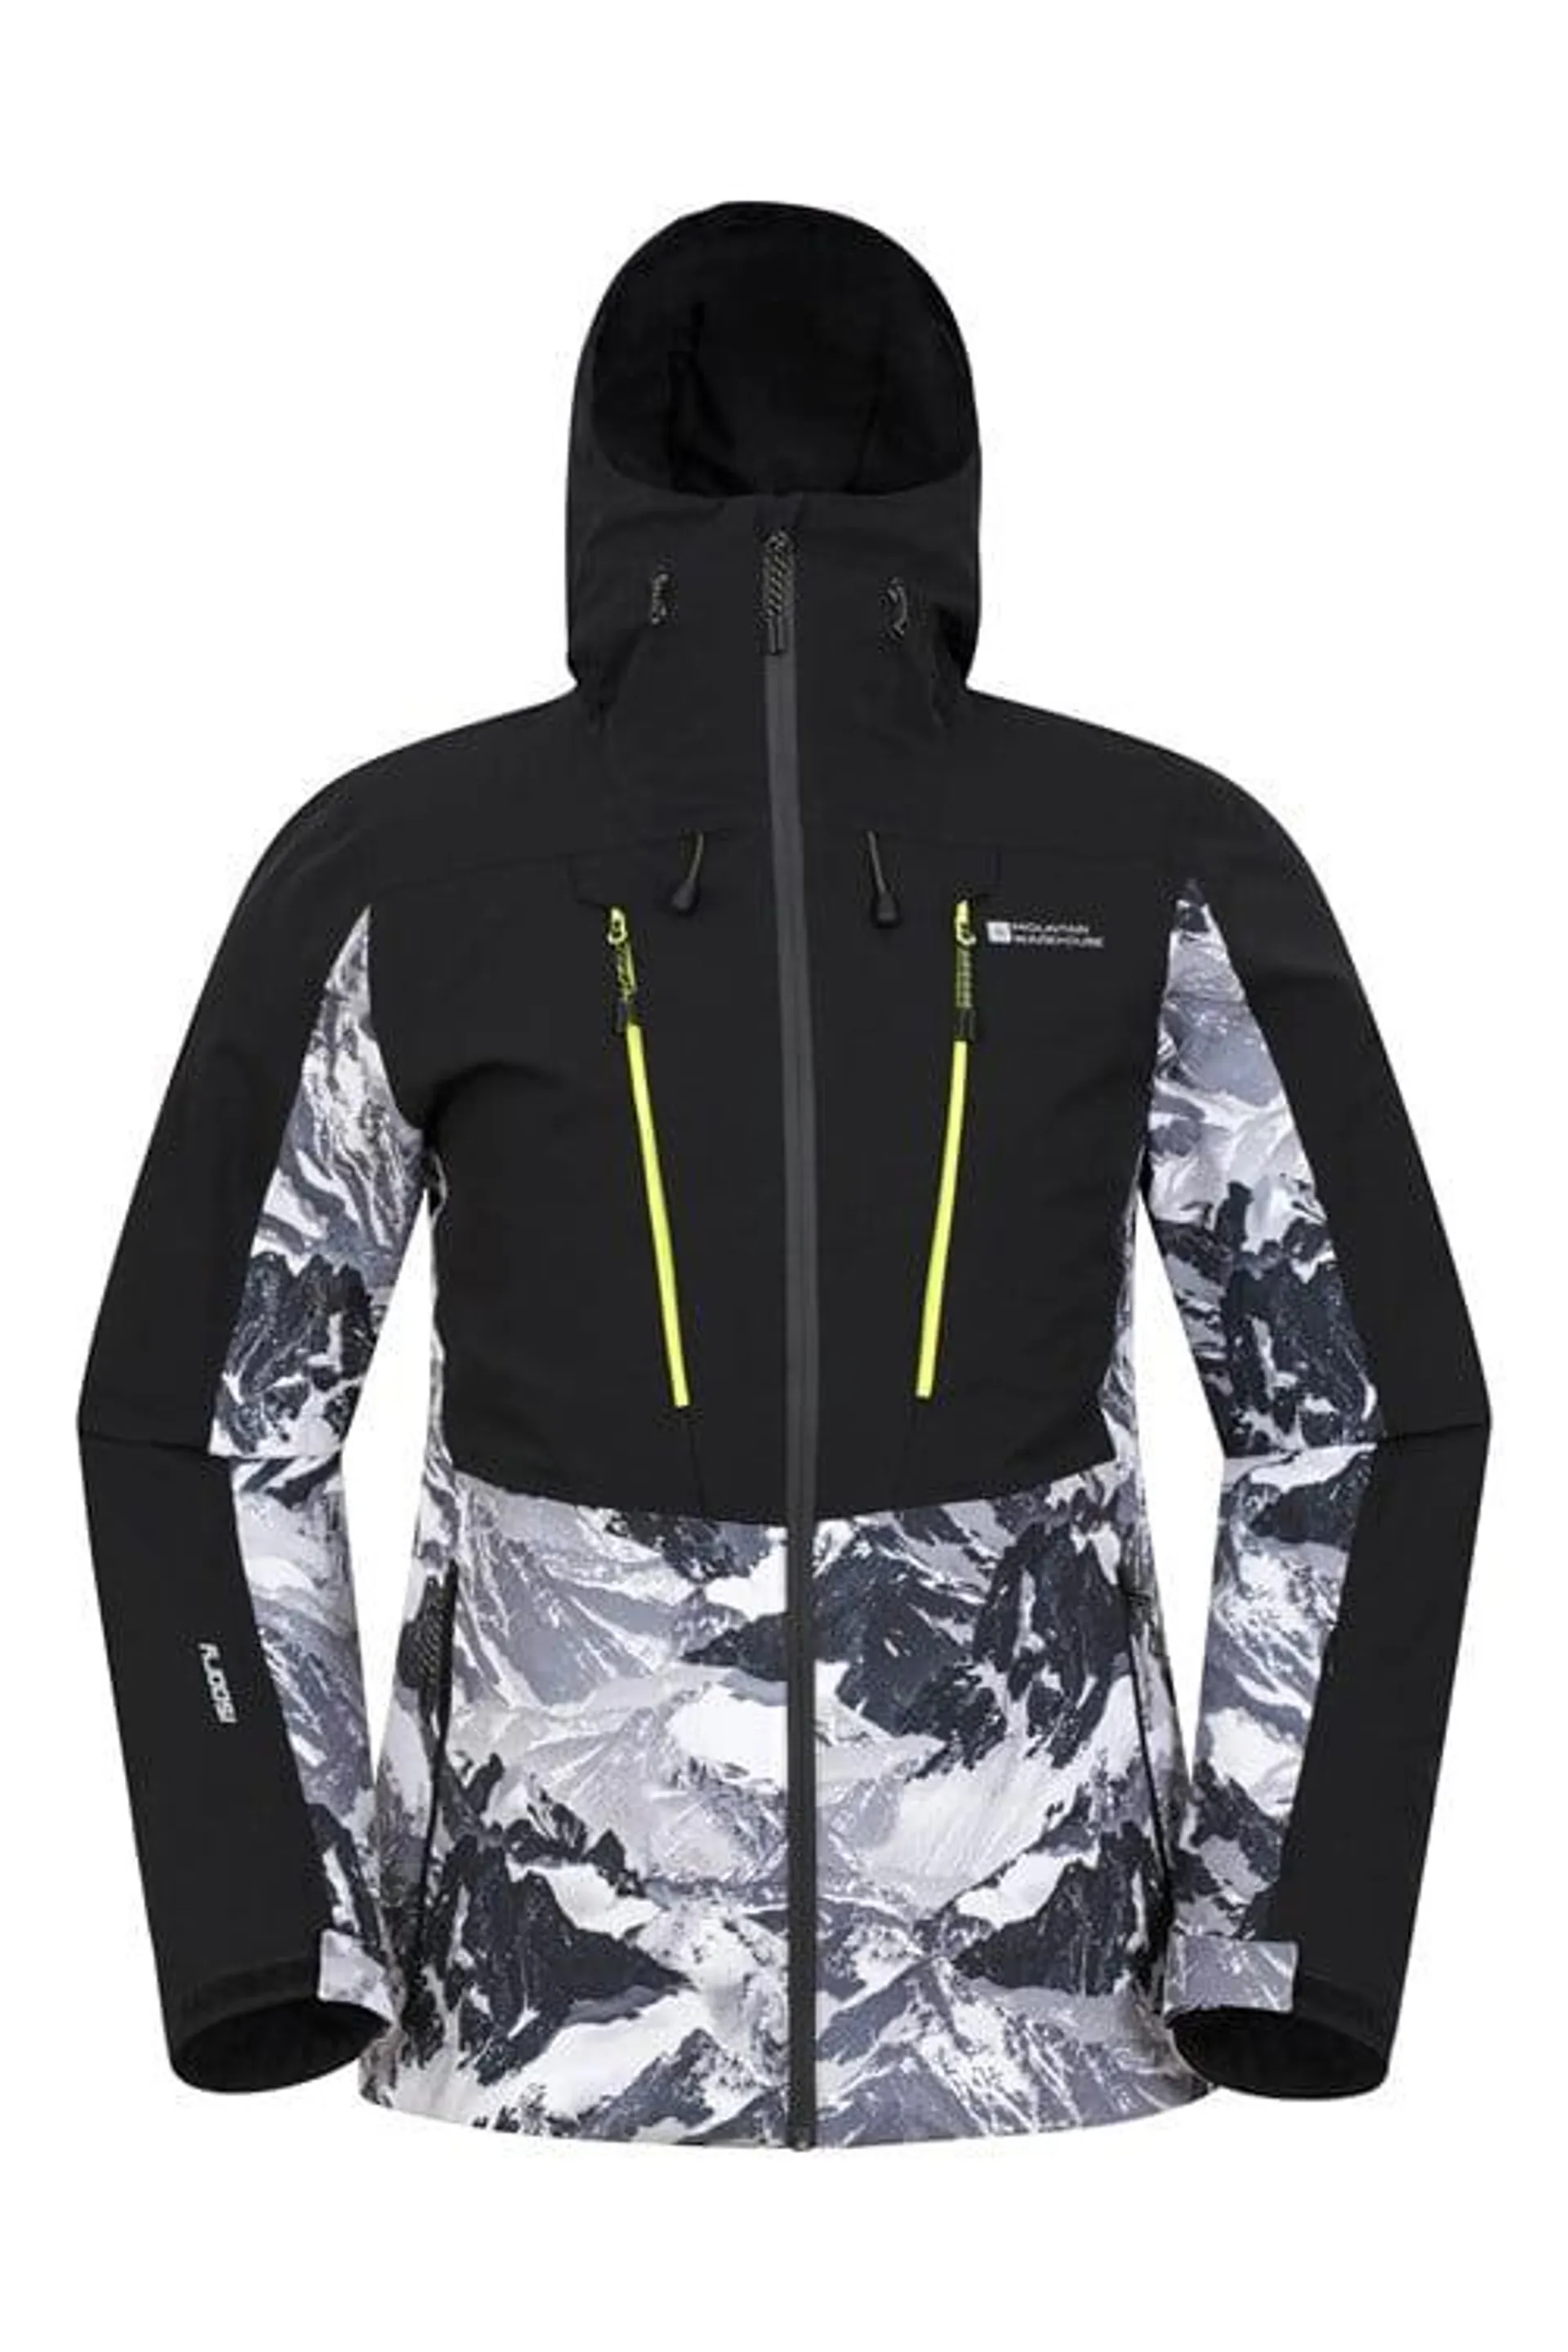 Infinite Extreme Mens Waterproof Ski Jacket